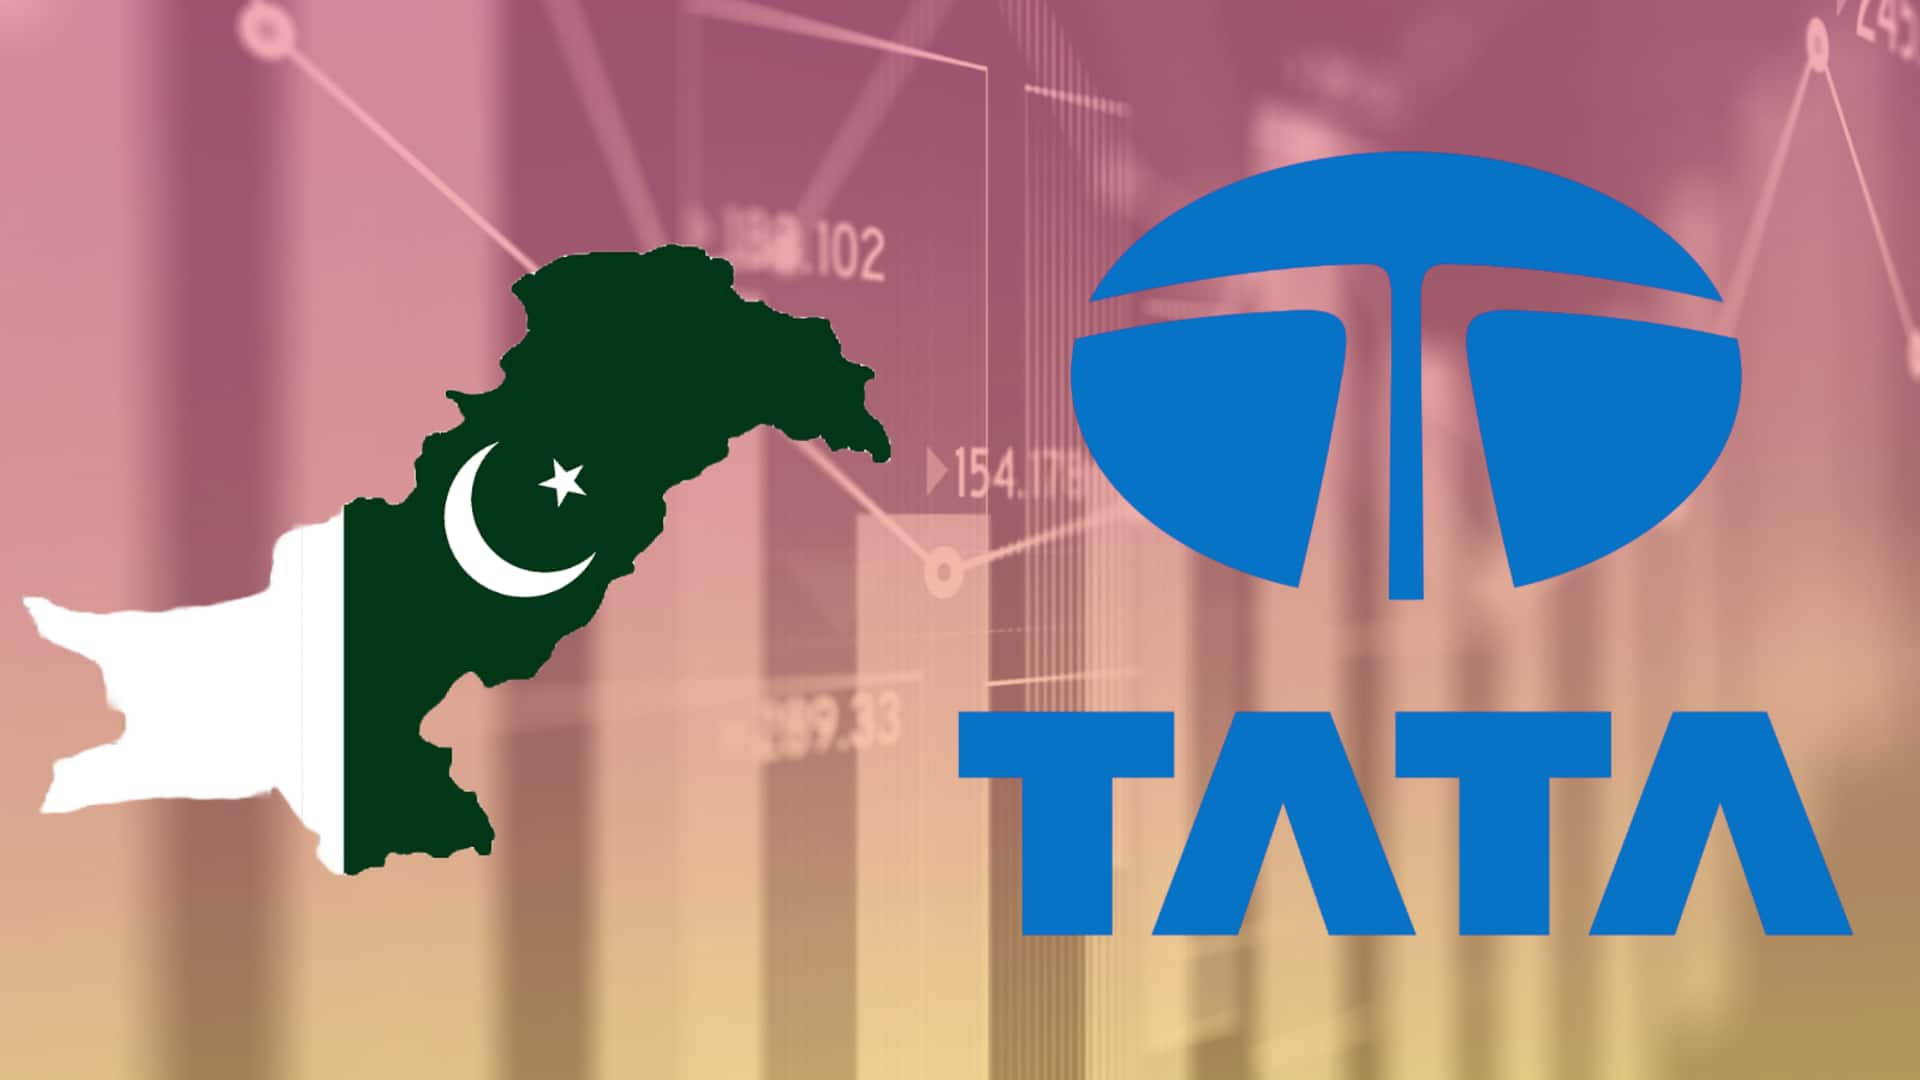 टाटा समूह का बाजार मूल्य पाकिस्तान की पूरी अर्थव्यवस्था से ज्यादा हुआ